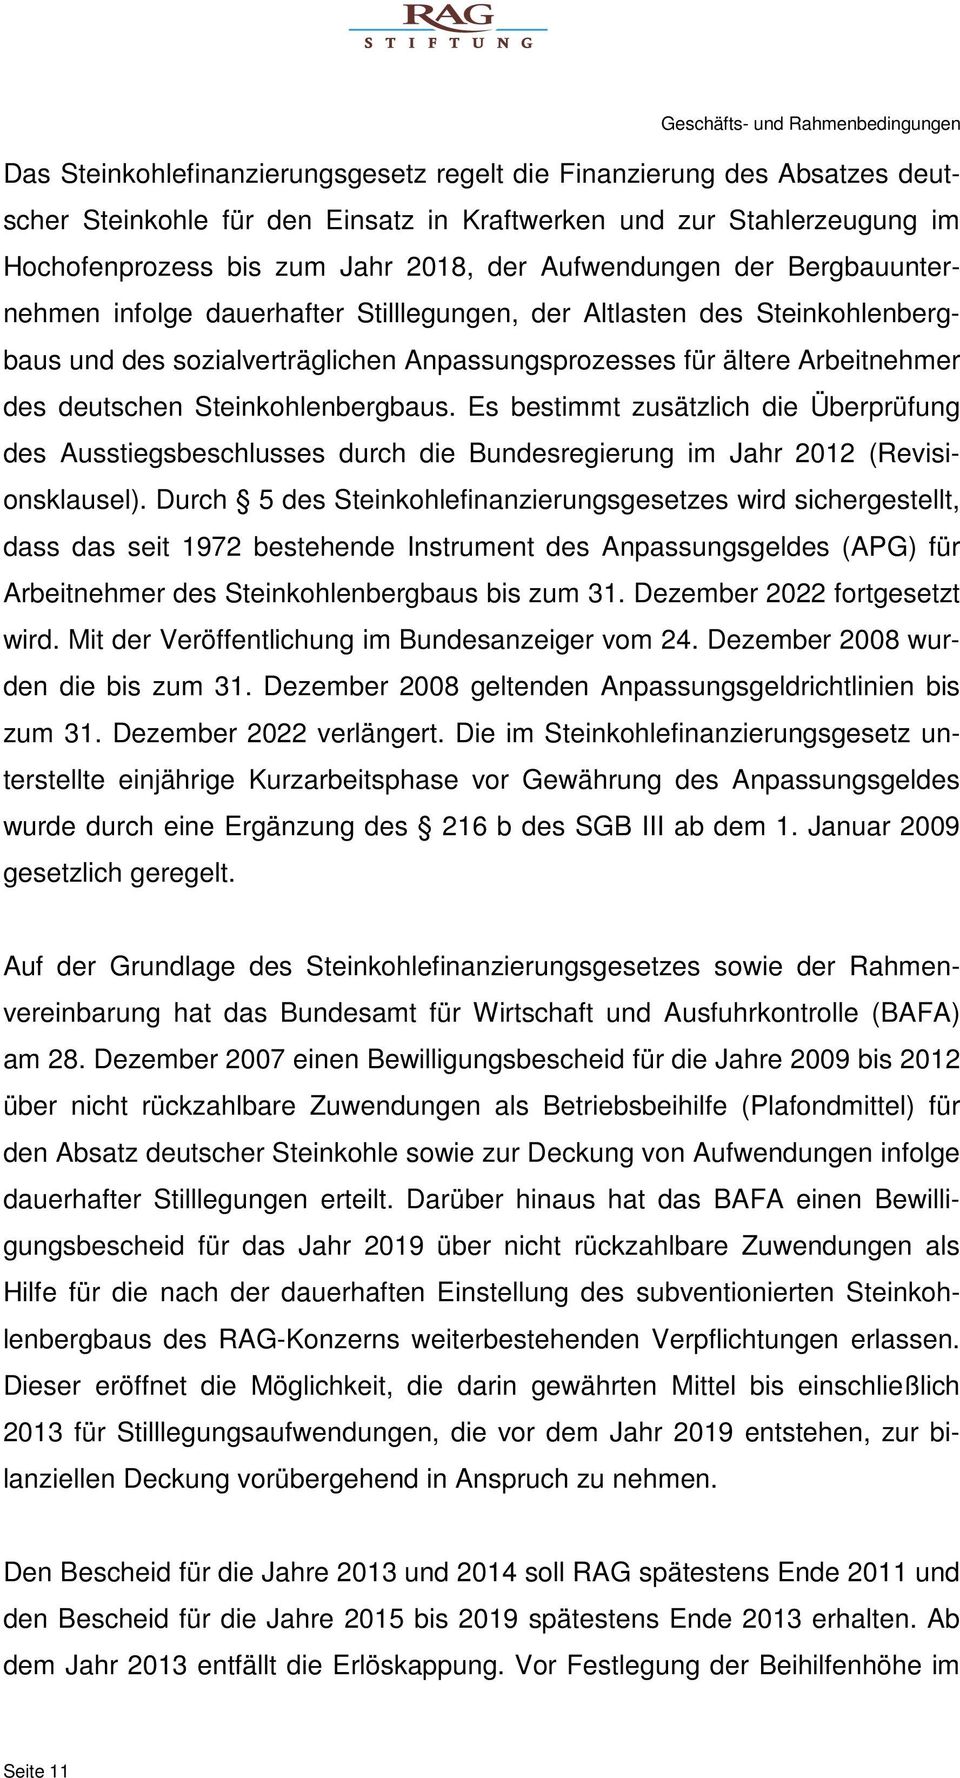 Arbeitnehmer des deutschen Steinkohlenbergbaus. Es bestimmt zusätzlich die Überprüfung des Ausstiegsbeschlusses durch die Bundesregierung im Jahr 2012 (Revisionsklausel).